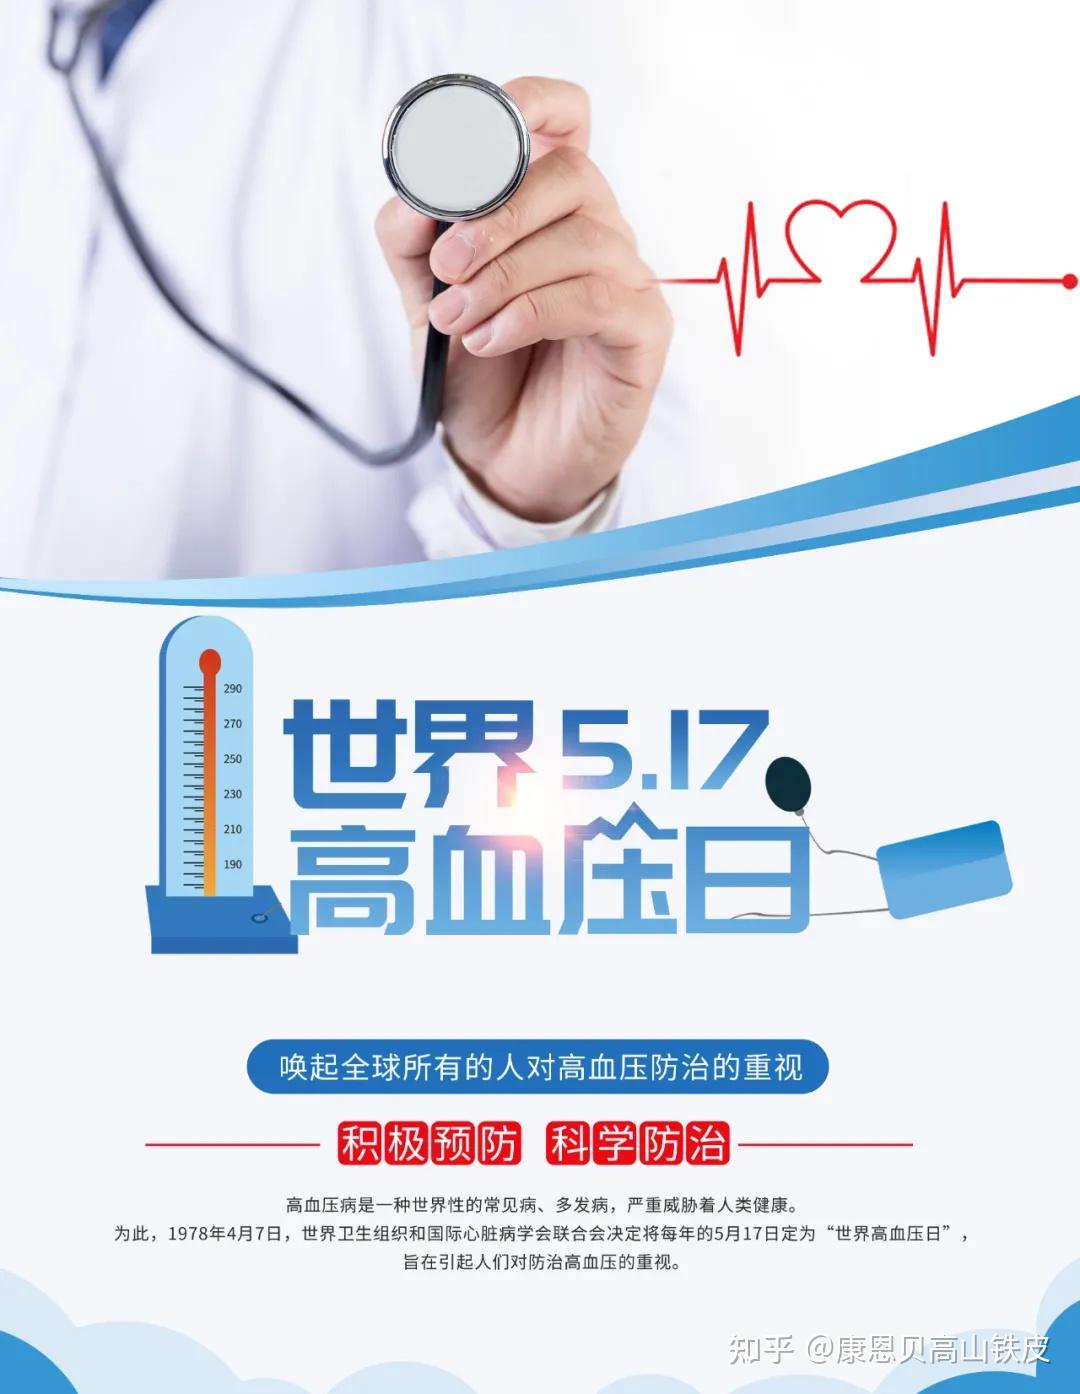 2021年5月17日是第17个世界高血压日.